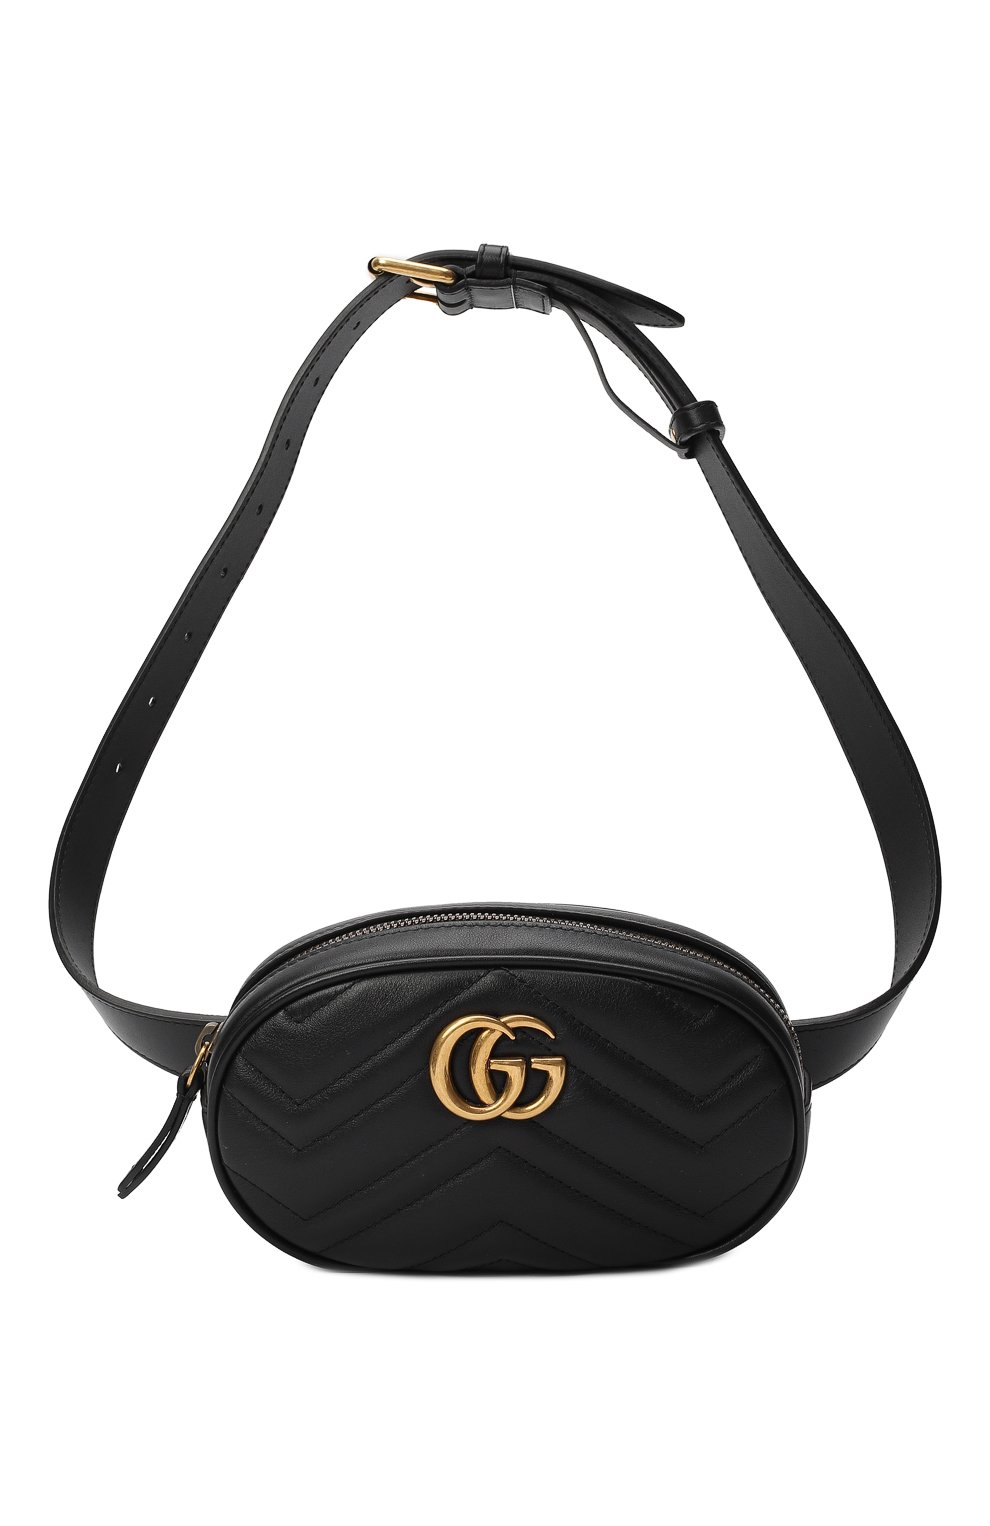 Поясная сумка GG Marmont | Gucci | Чёрный - 8